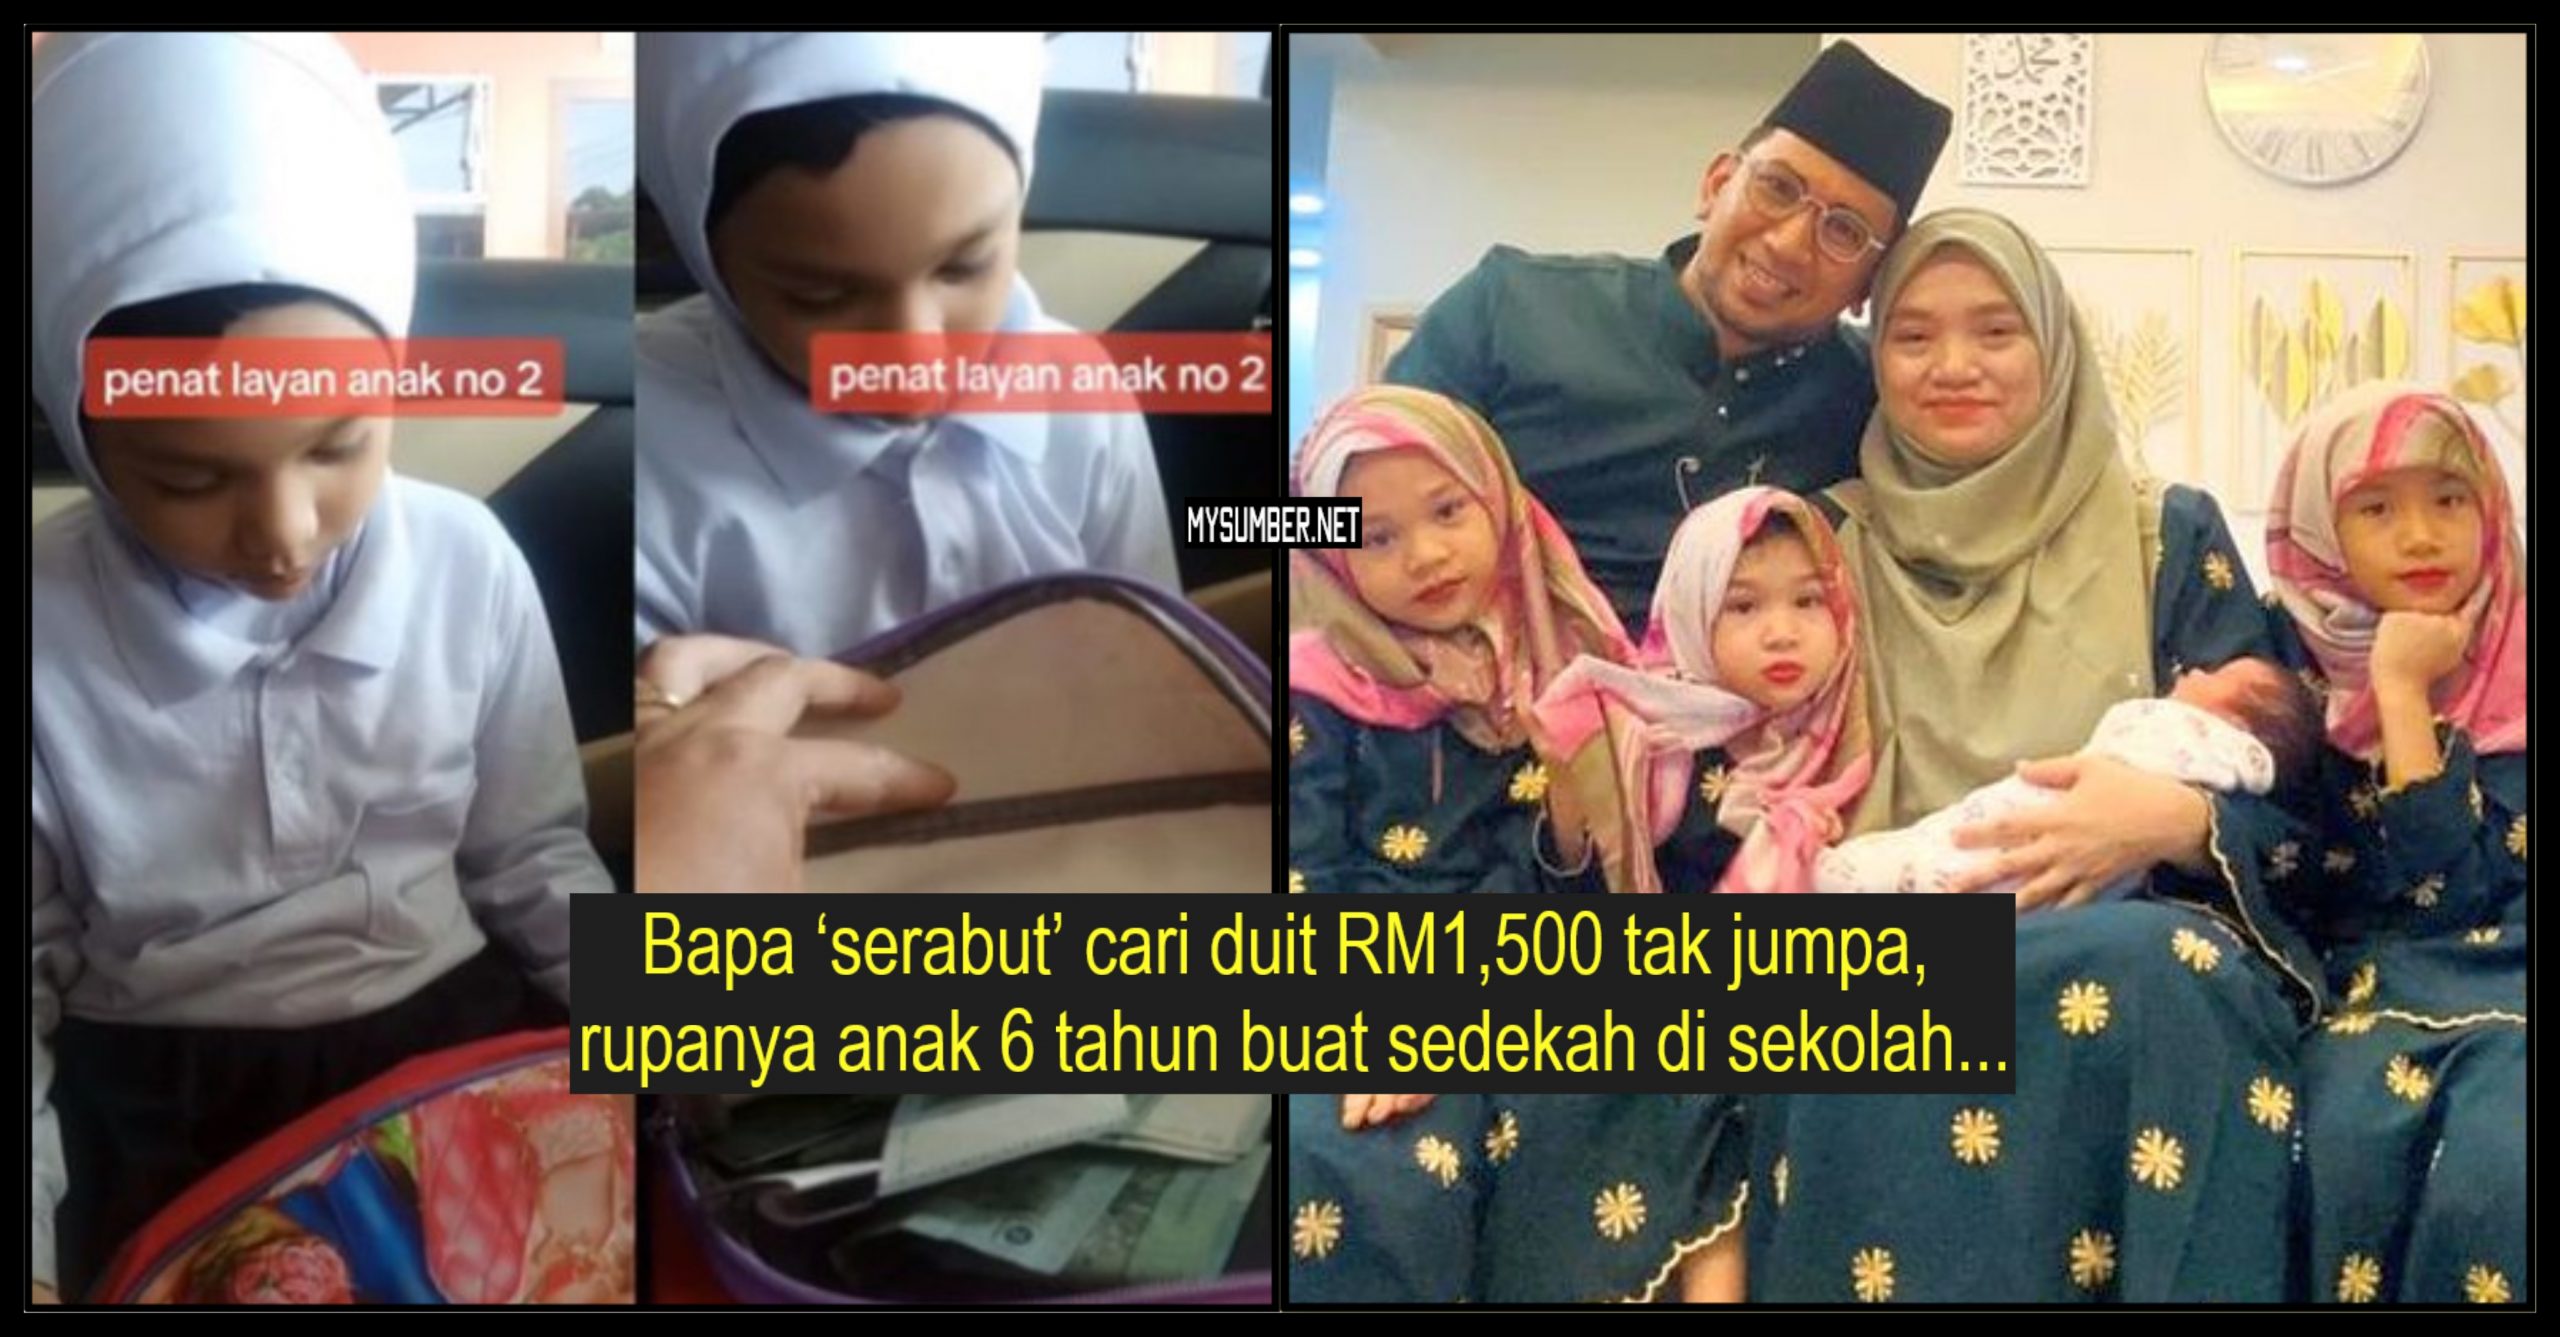 Anak 6 tahun guna duit bapa RM1500 buat bantu kawan-kawan di sekolah